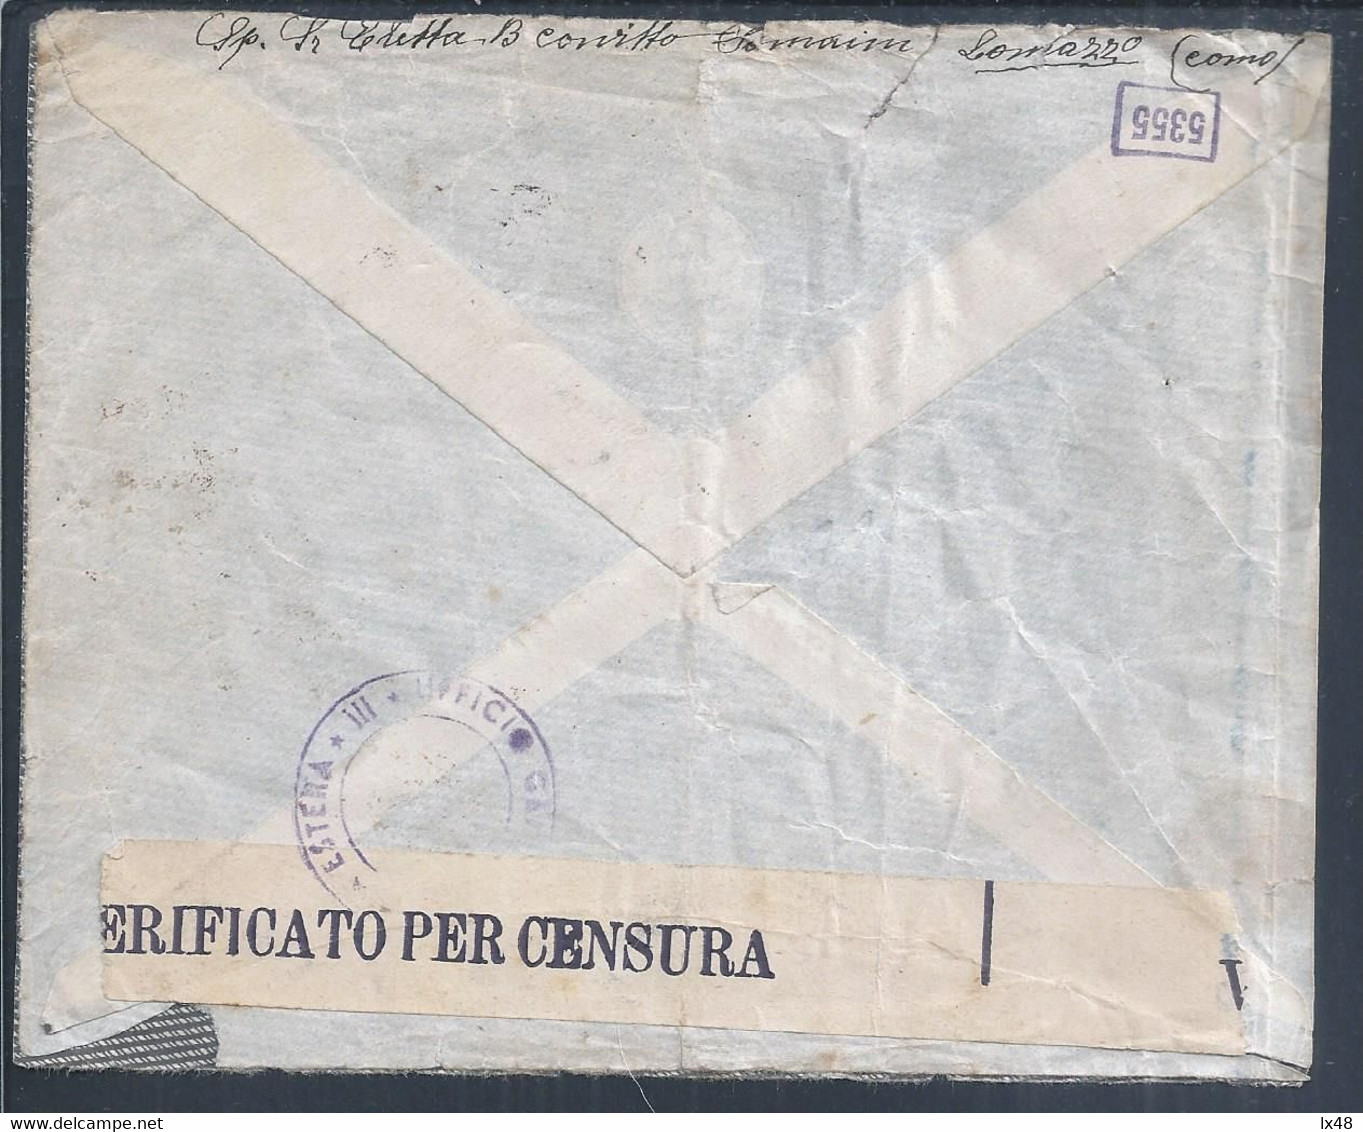 Lettera Censurata E Raccomandata Da Lomazzo Como 1941. 2° Guerra Mondiale. Censored And Registered Letter From Lomazzo - Insured